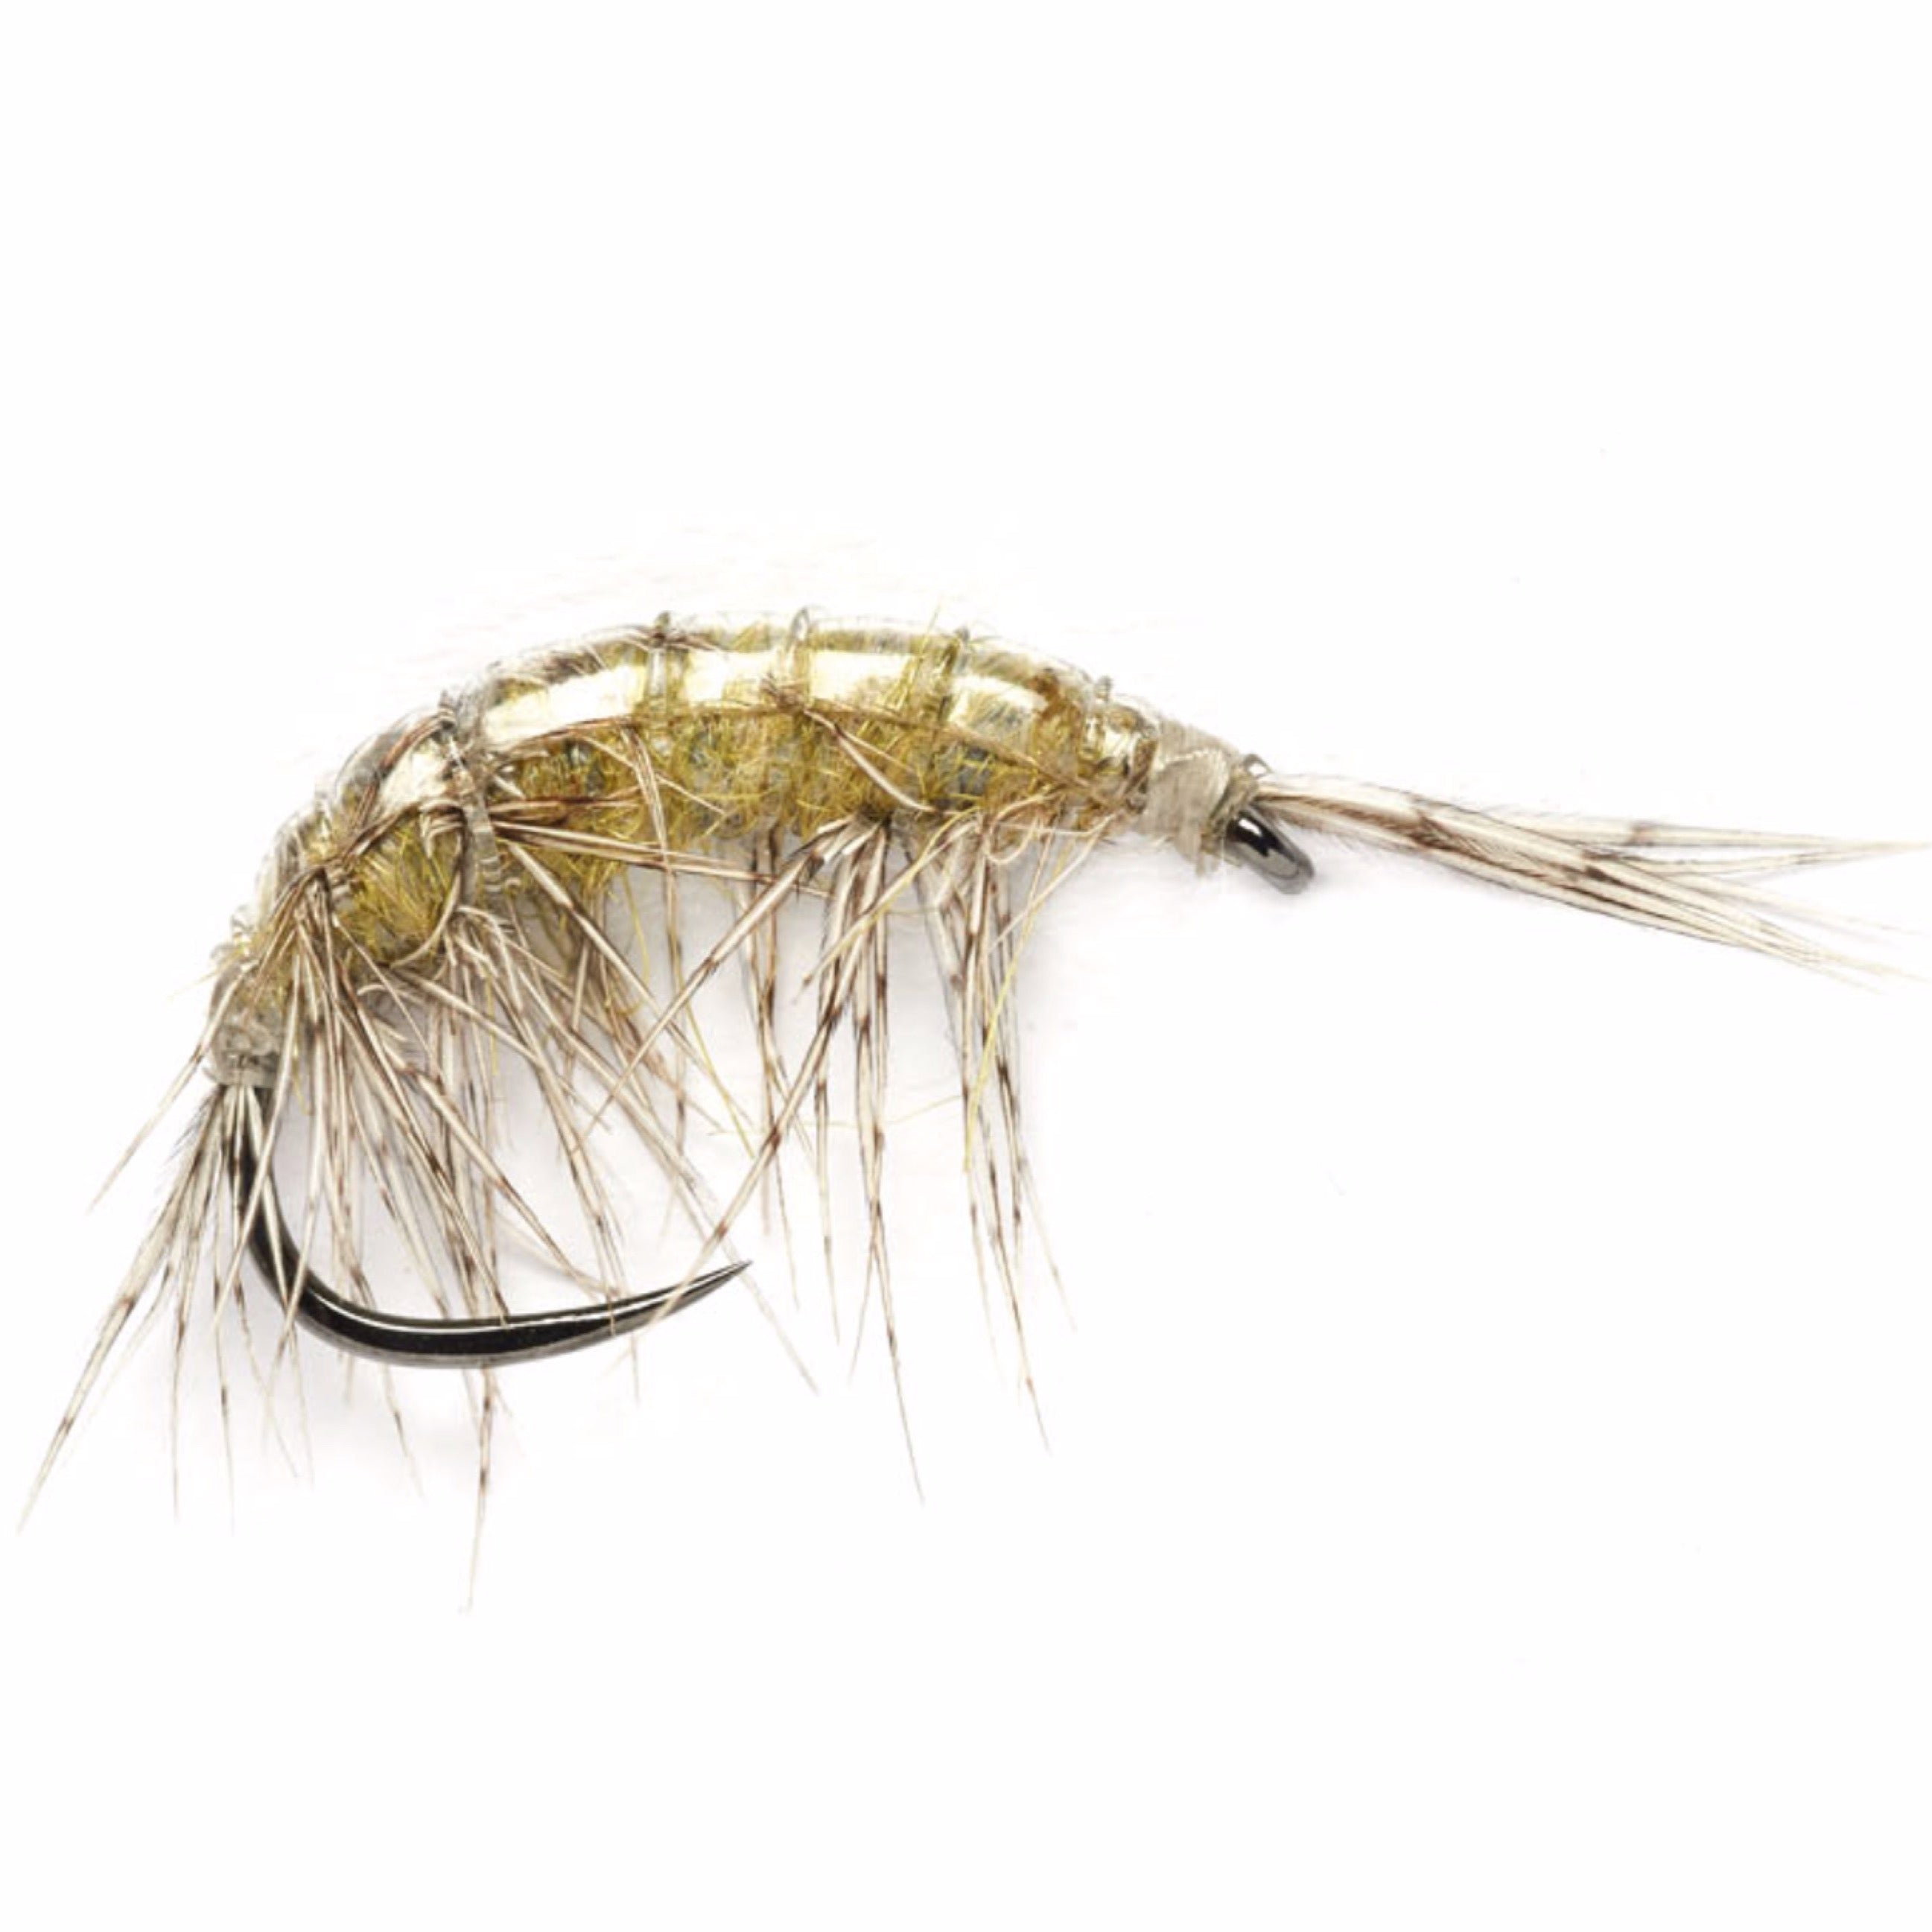 https://mossycreekflyfishing.com/cdn/shop/products/shrimp_2594x.jpg?v=1607094616